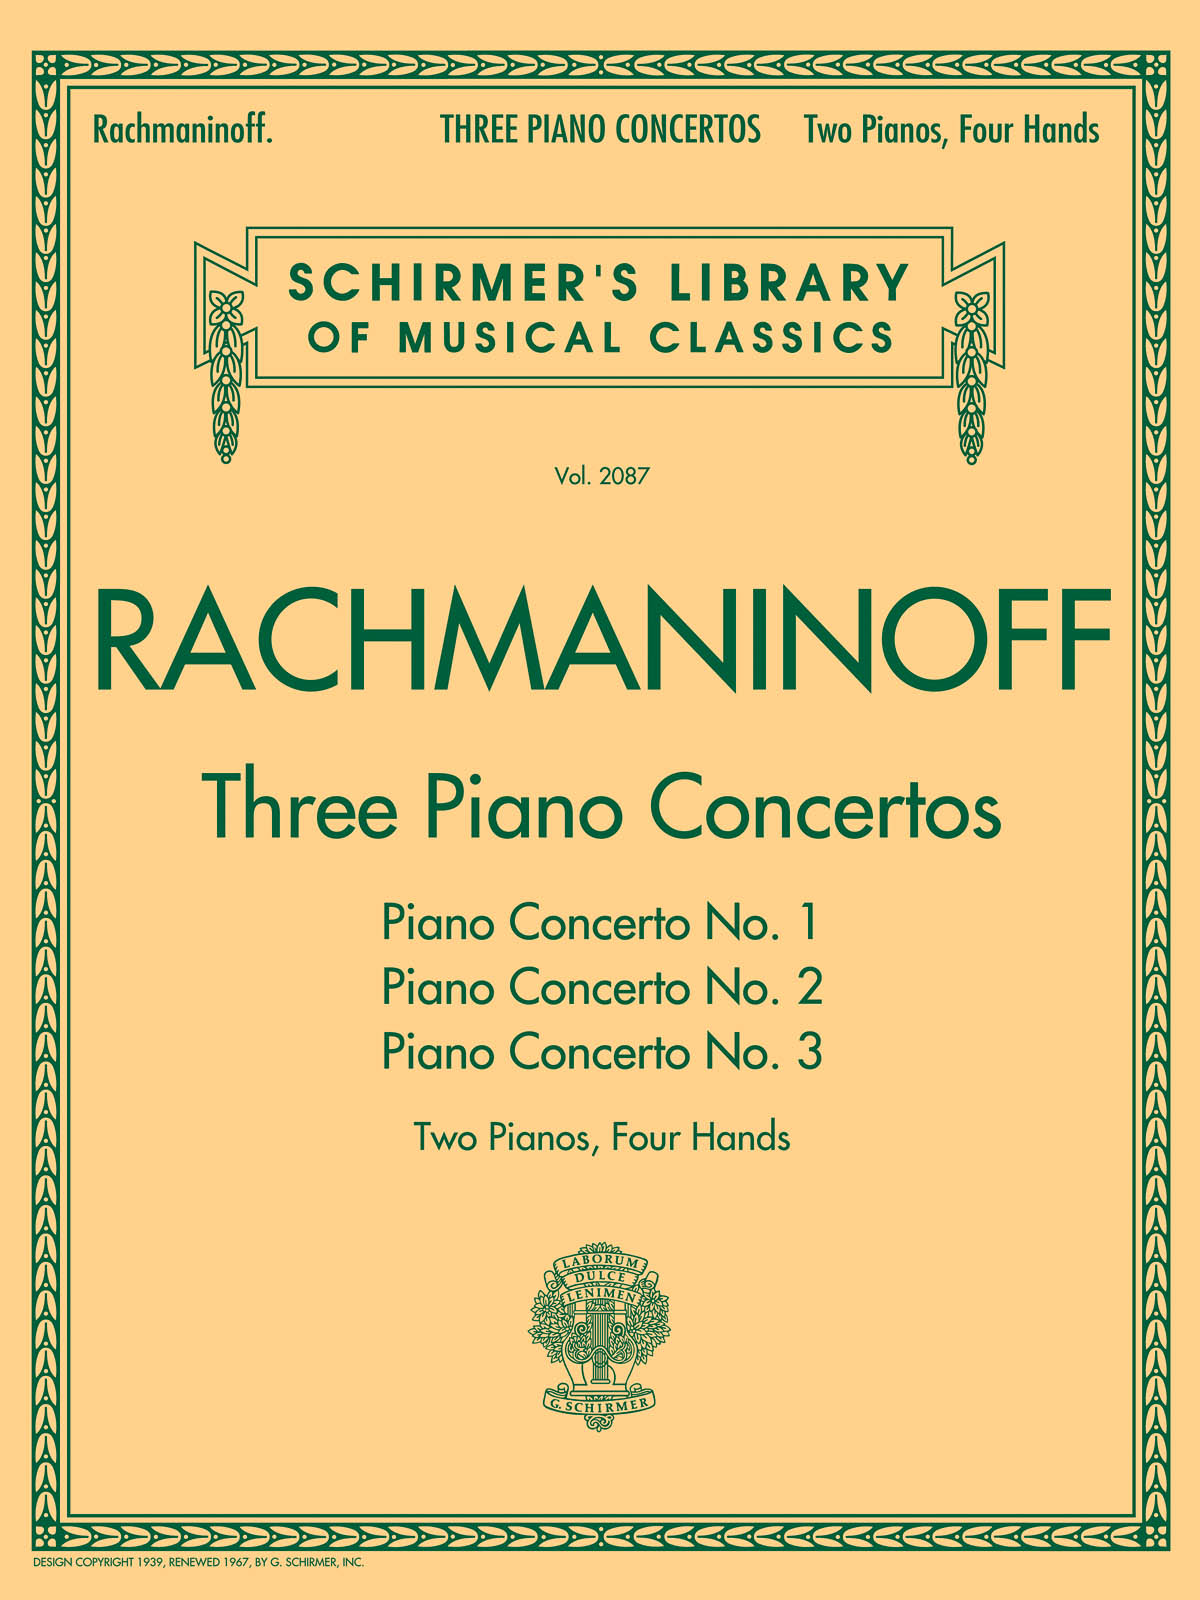 Rachmaninoff: 3 Piano Concertos: Nos. 1, 2, and 3